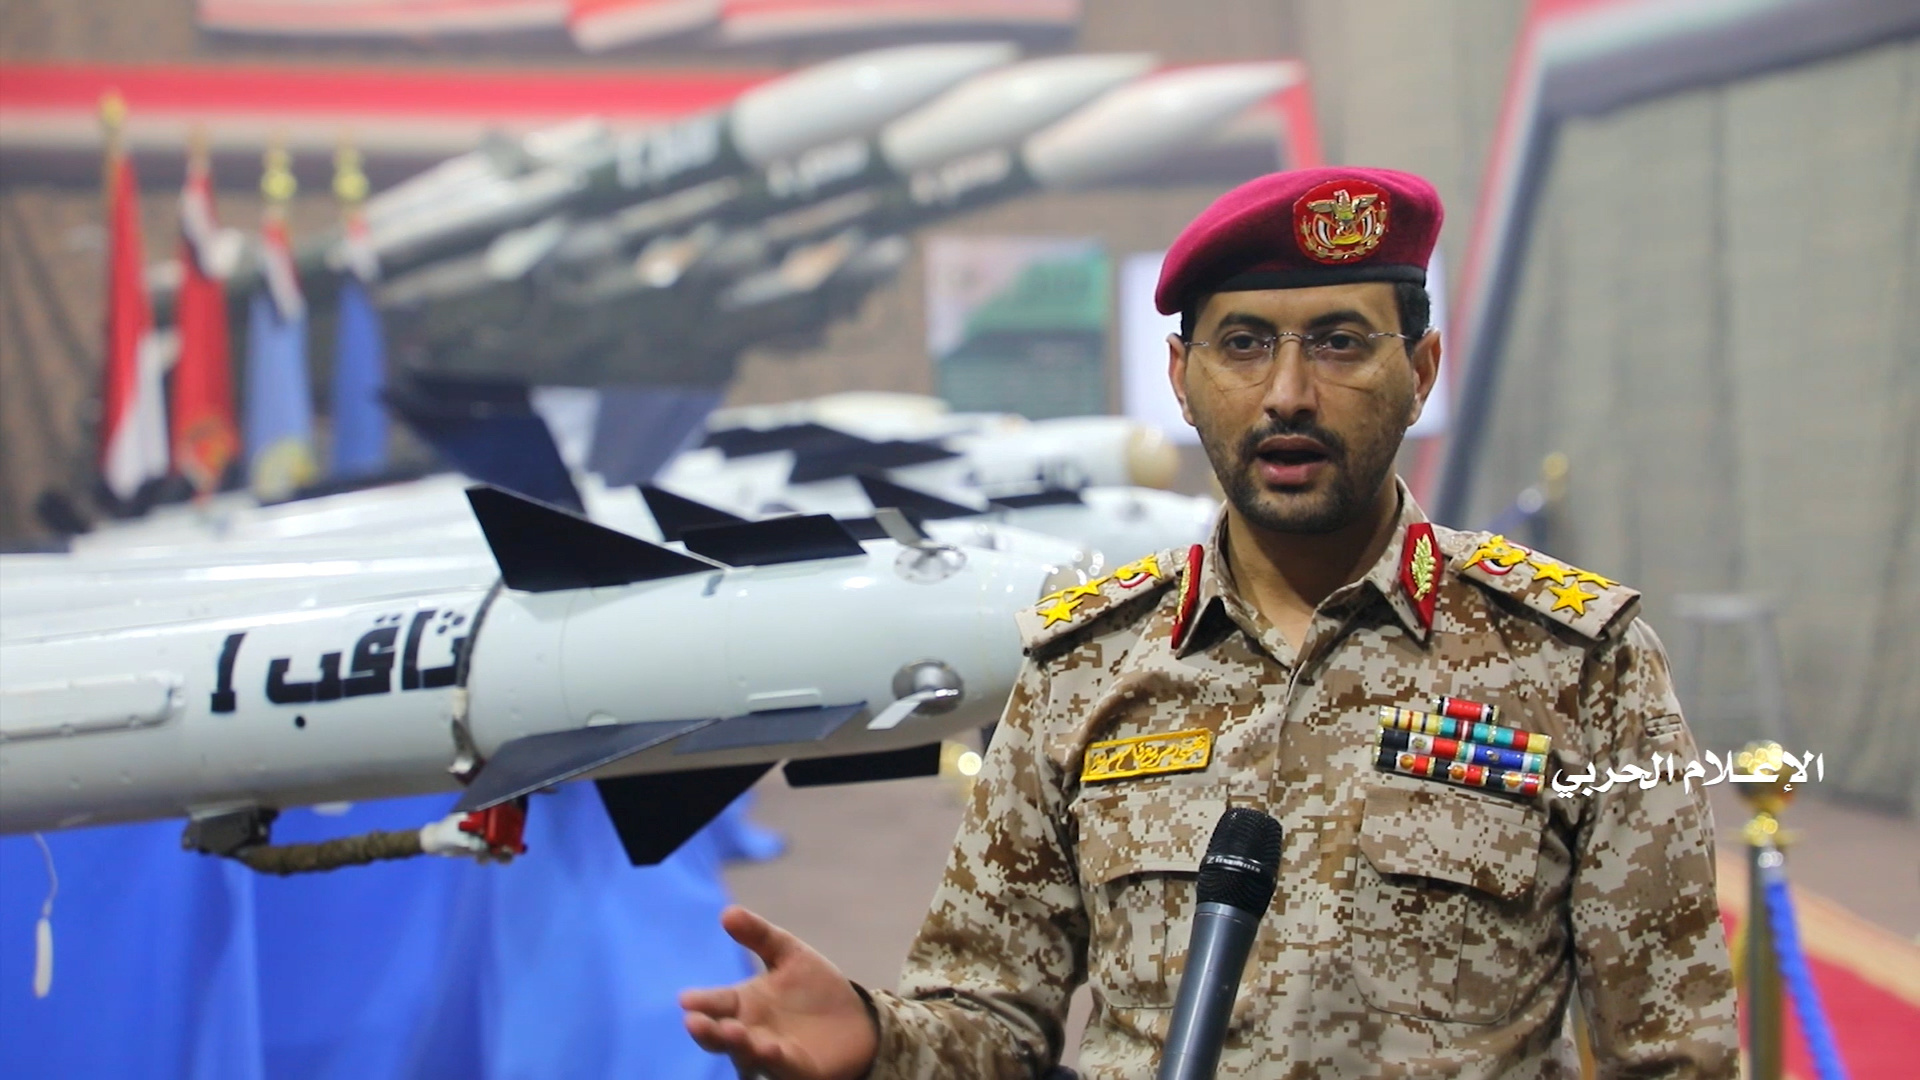 الحوثيون يعلنون شن هجوم على مطار أبها السعودي بأربع طائرات مسيرة